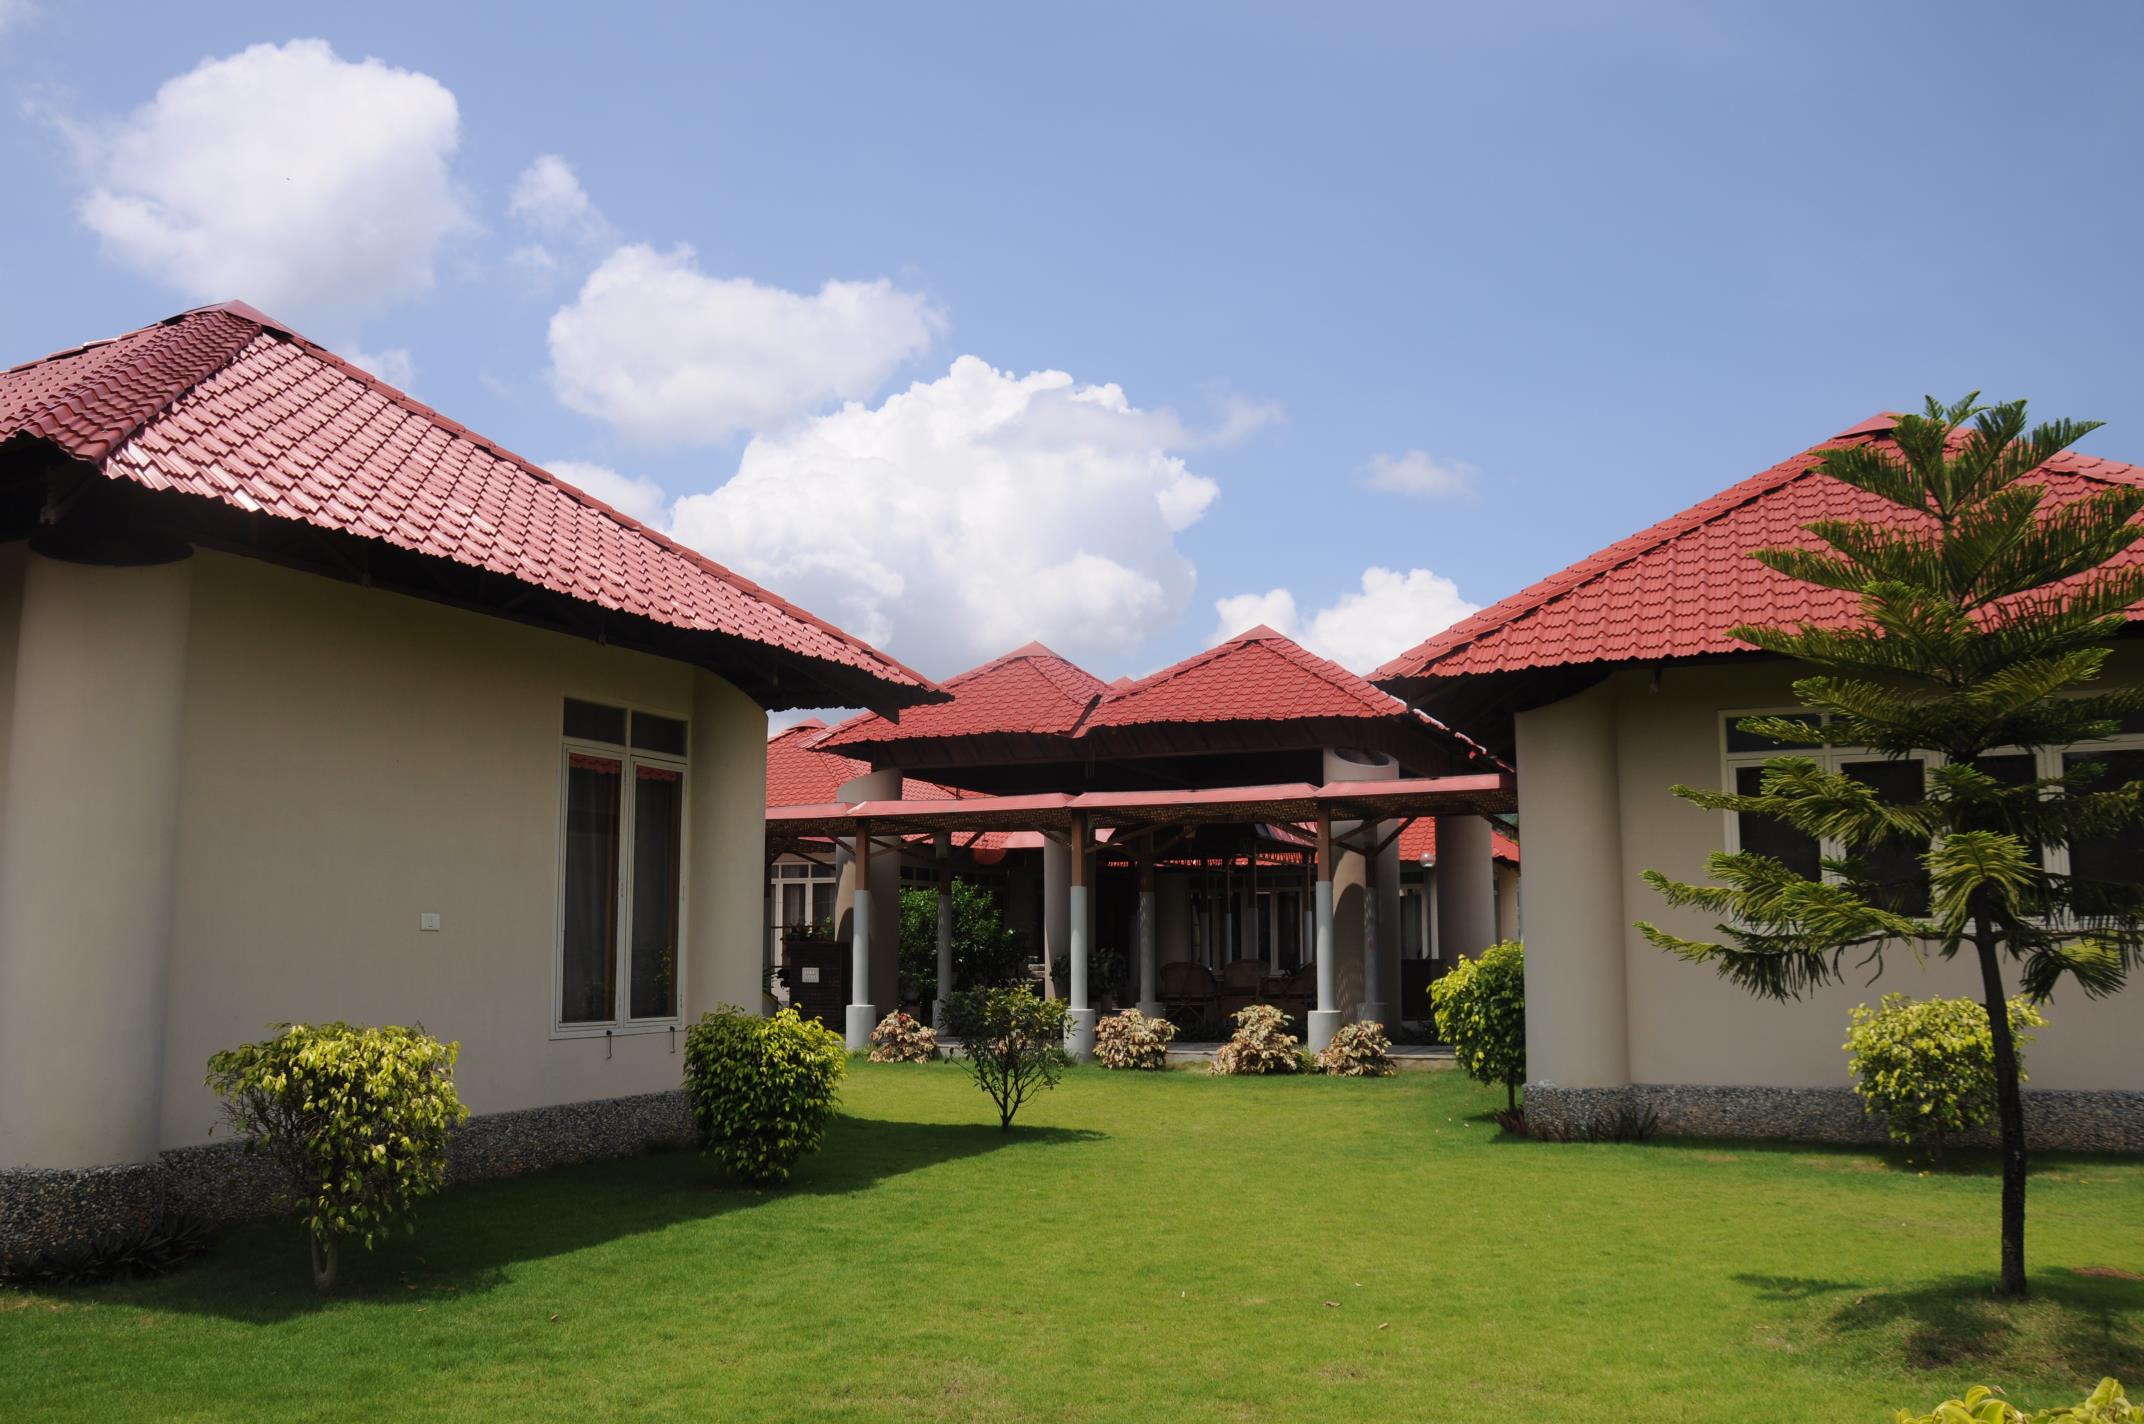 dynaroof-tile-roof-on-building